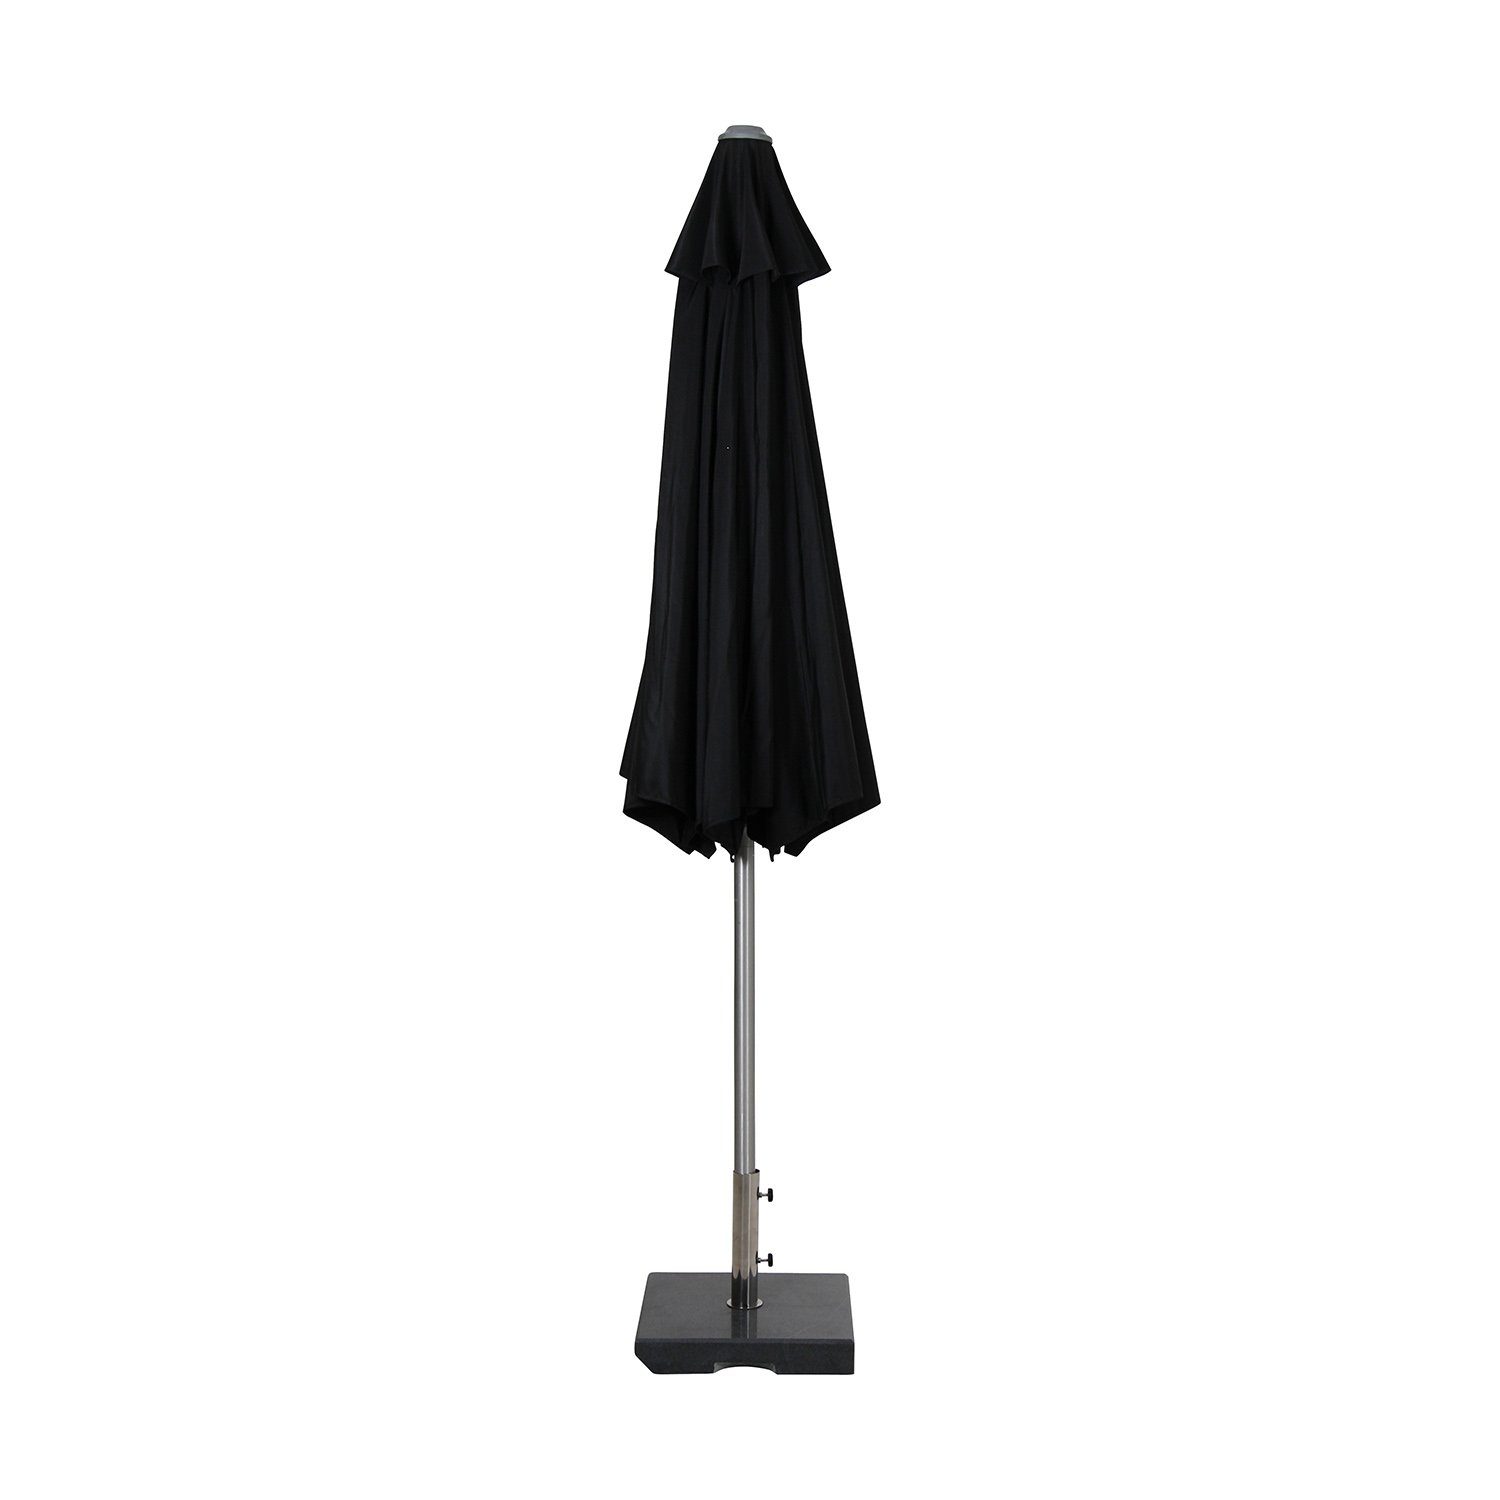 Andria tiltbart parasoll i svart från Brafab.